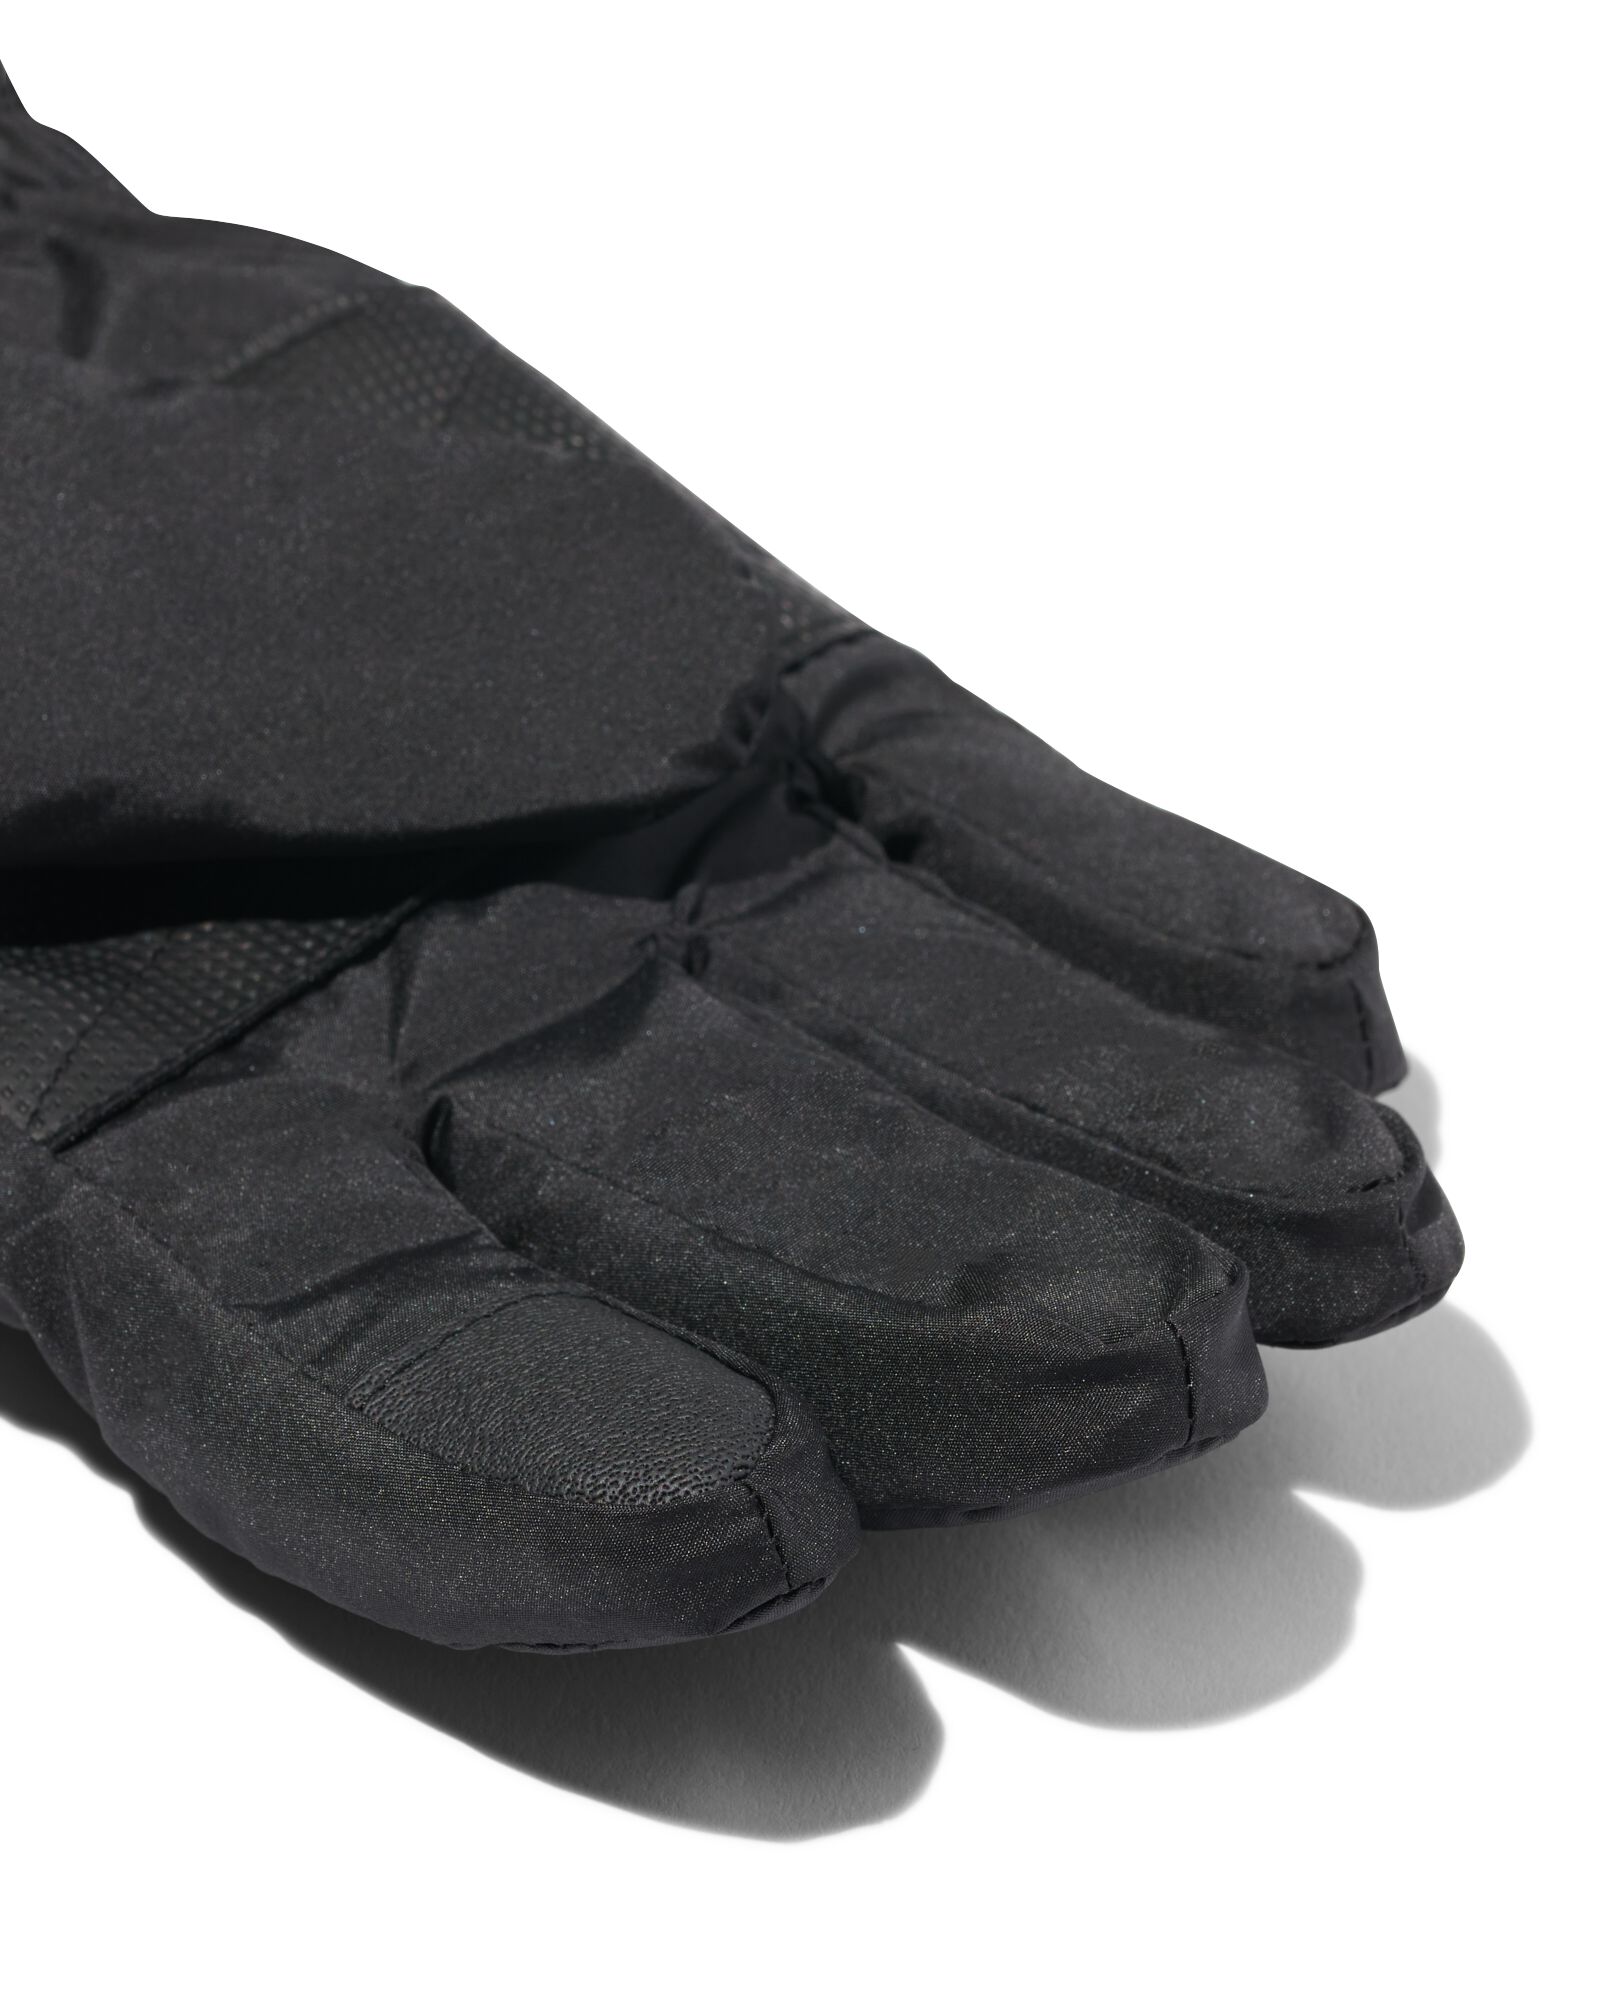 kinder handschoenen waterafstotend met touchscreen zwart 122/128 - 16711632 - HEMA